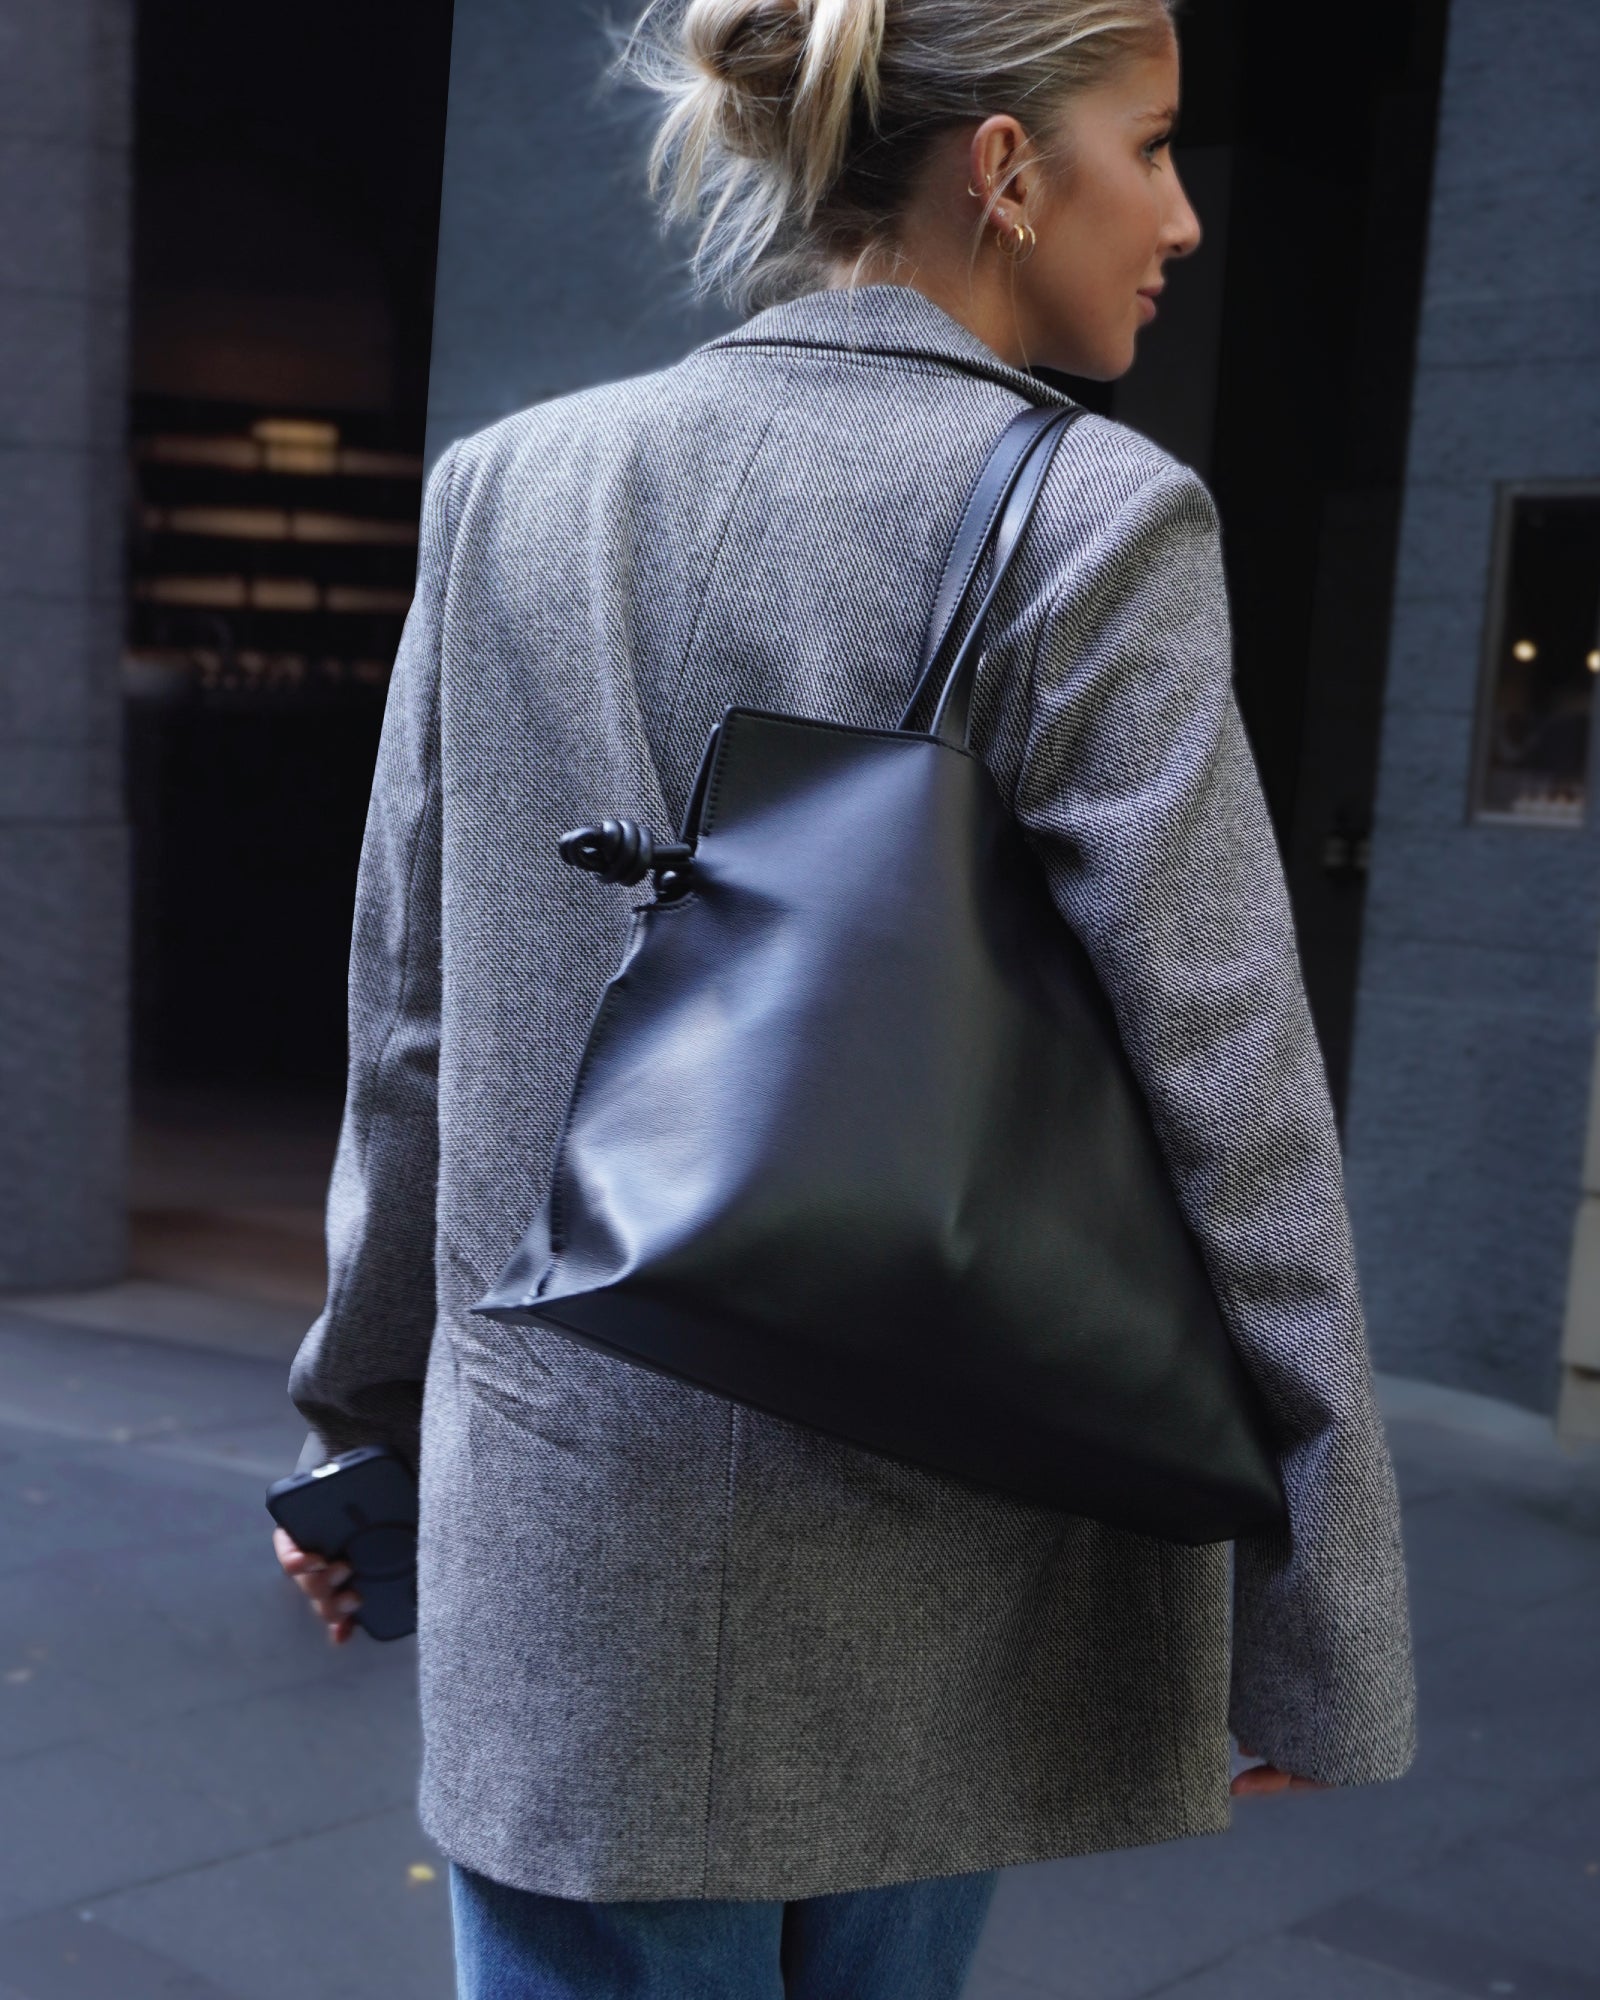 Shoulder Bag Bacalar Blue Leather